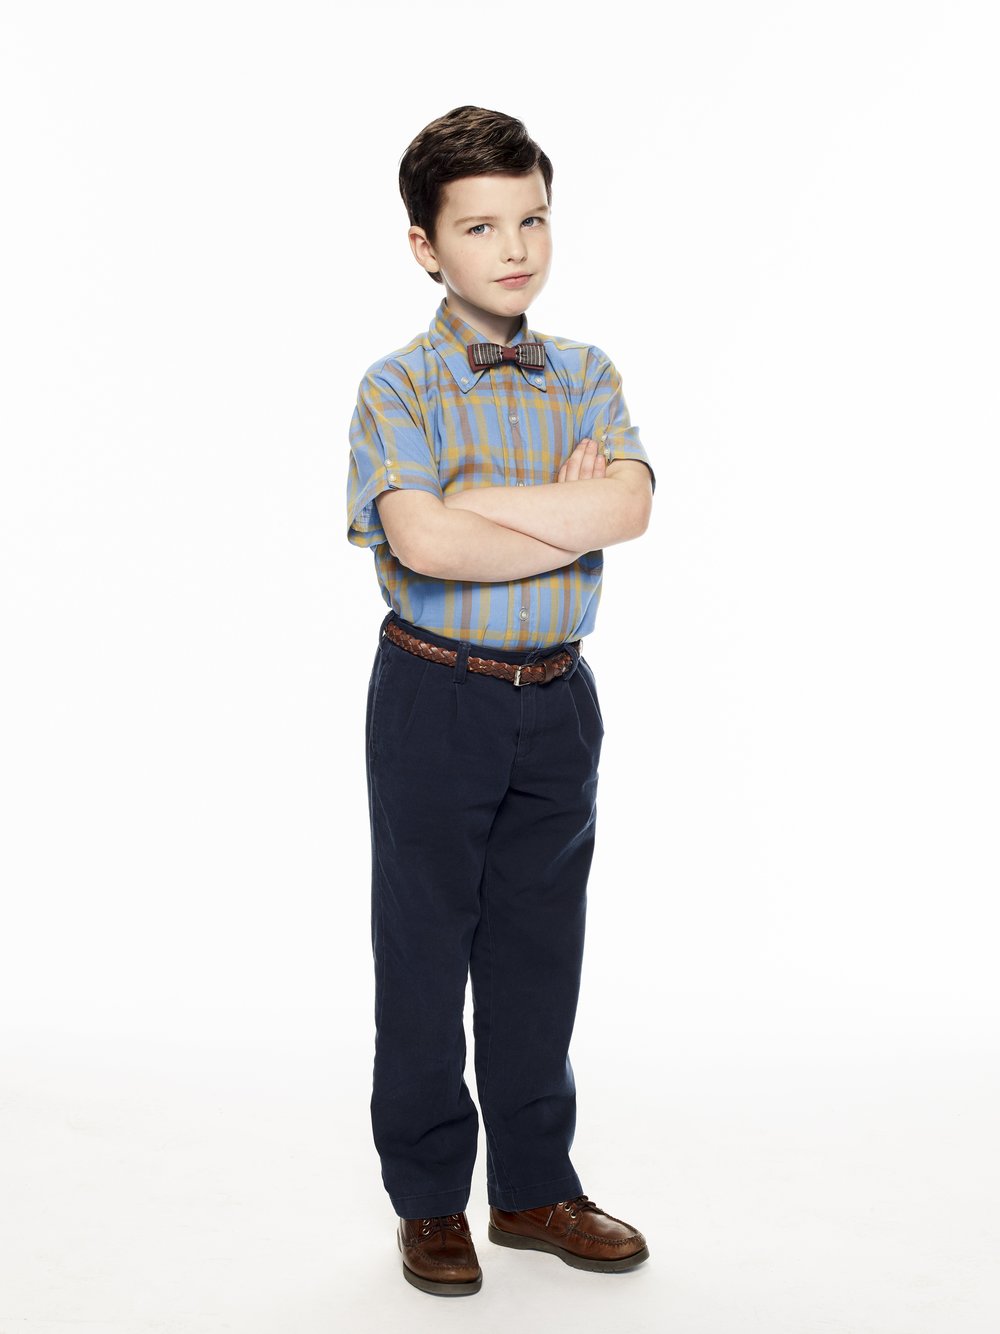  Iain Armitage is Young Sheldon Image - Nine 